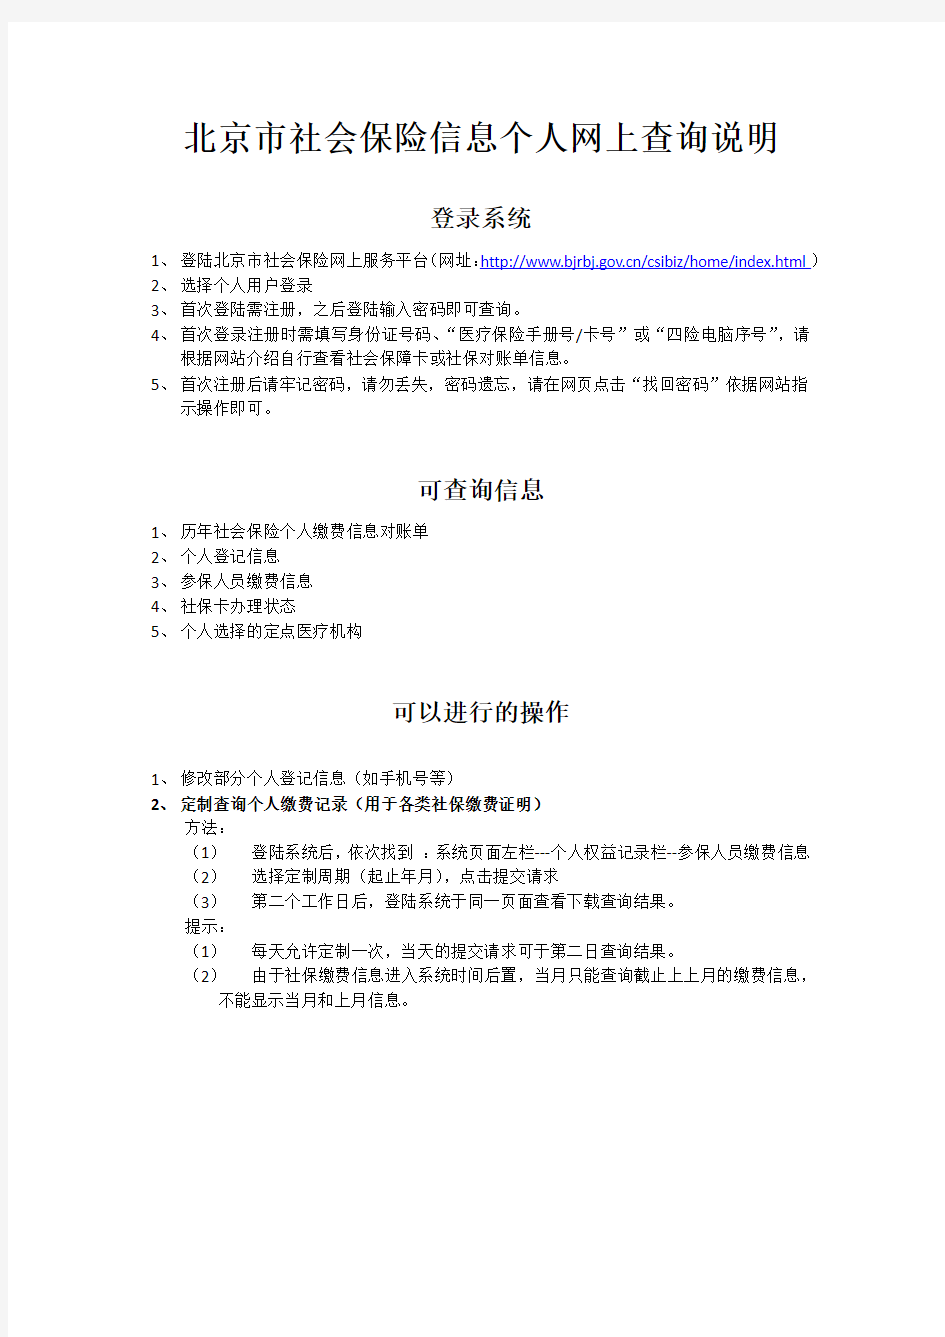 北京市社会保险信息个人网上查询说明